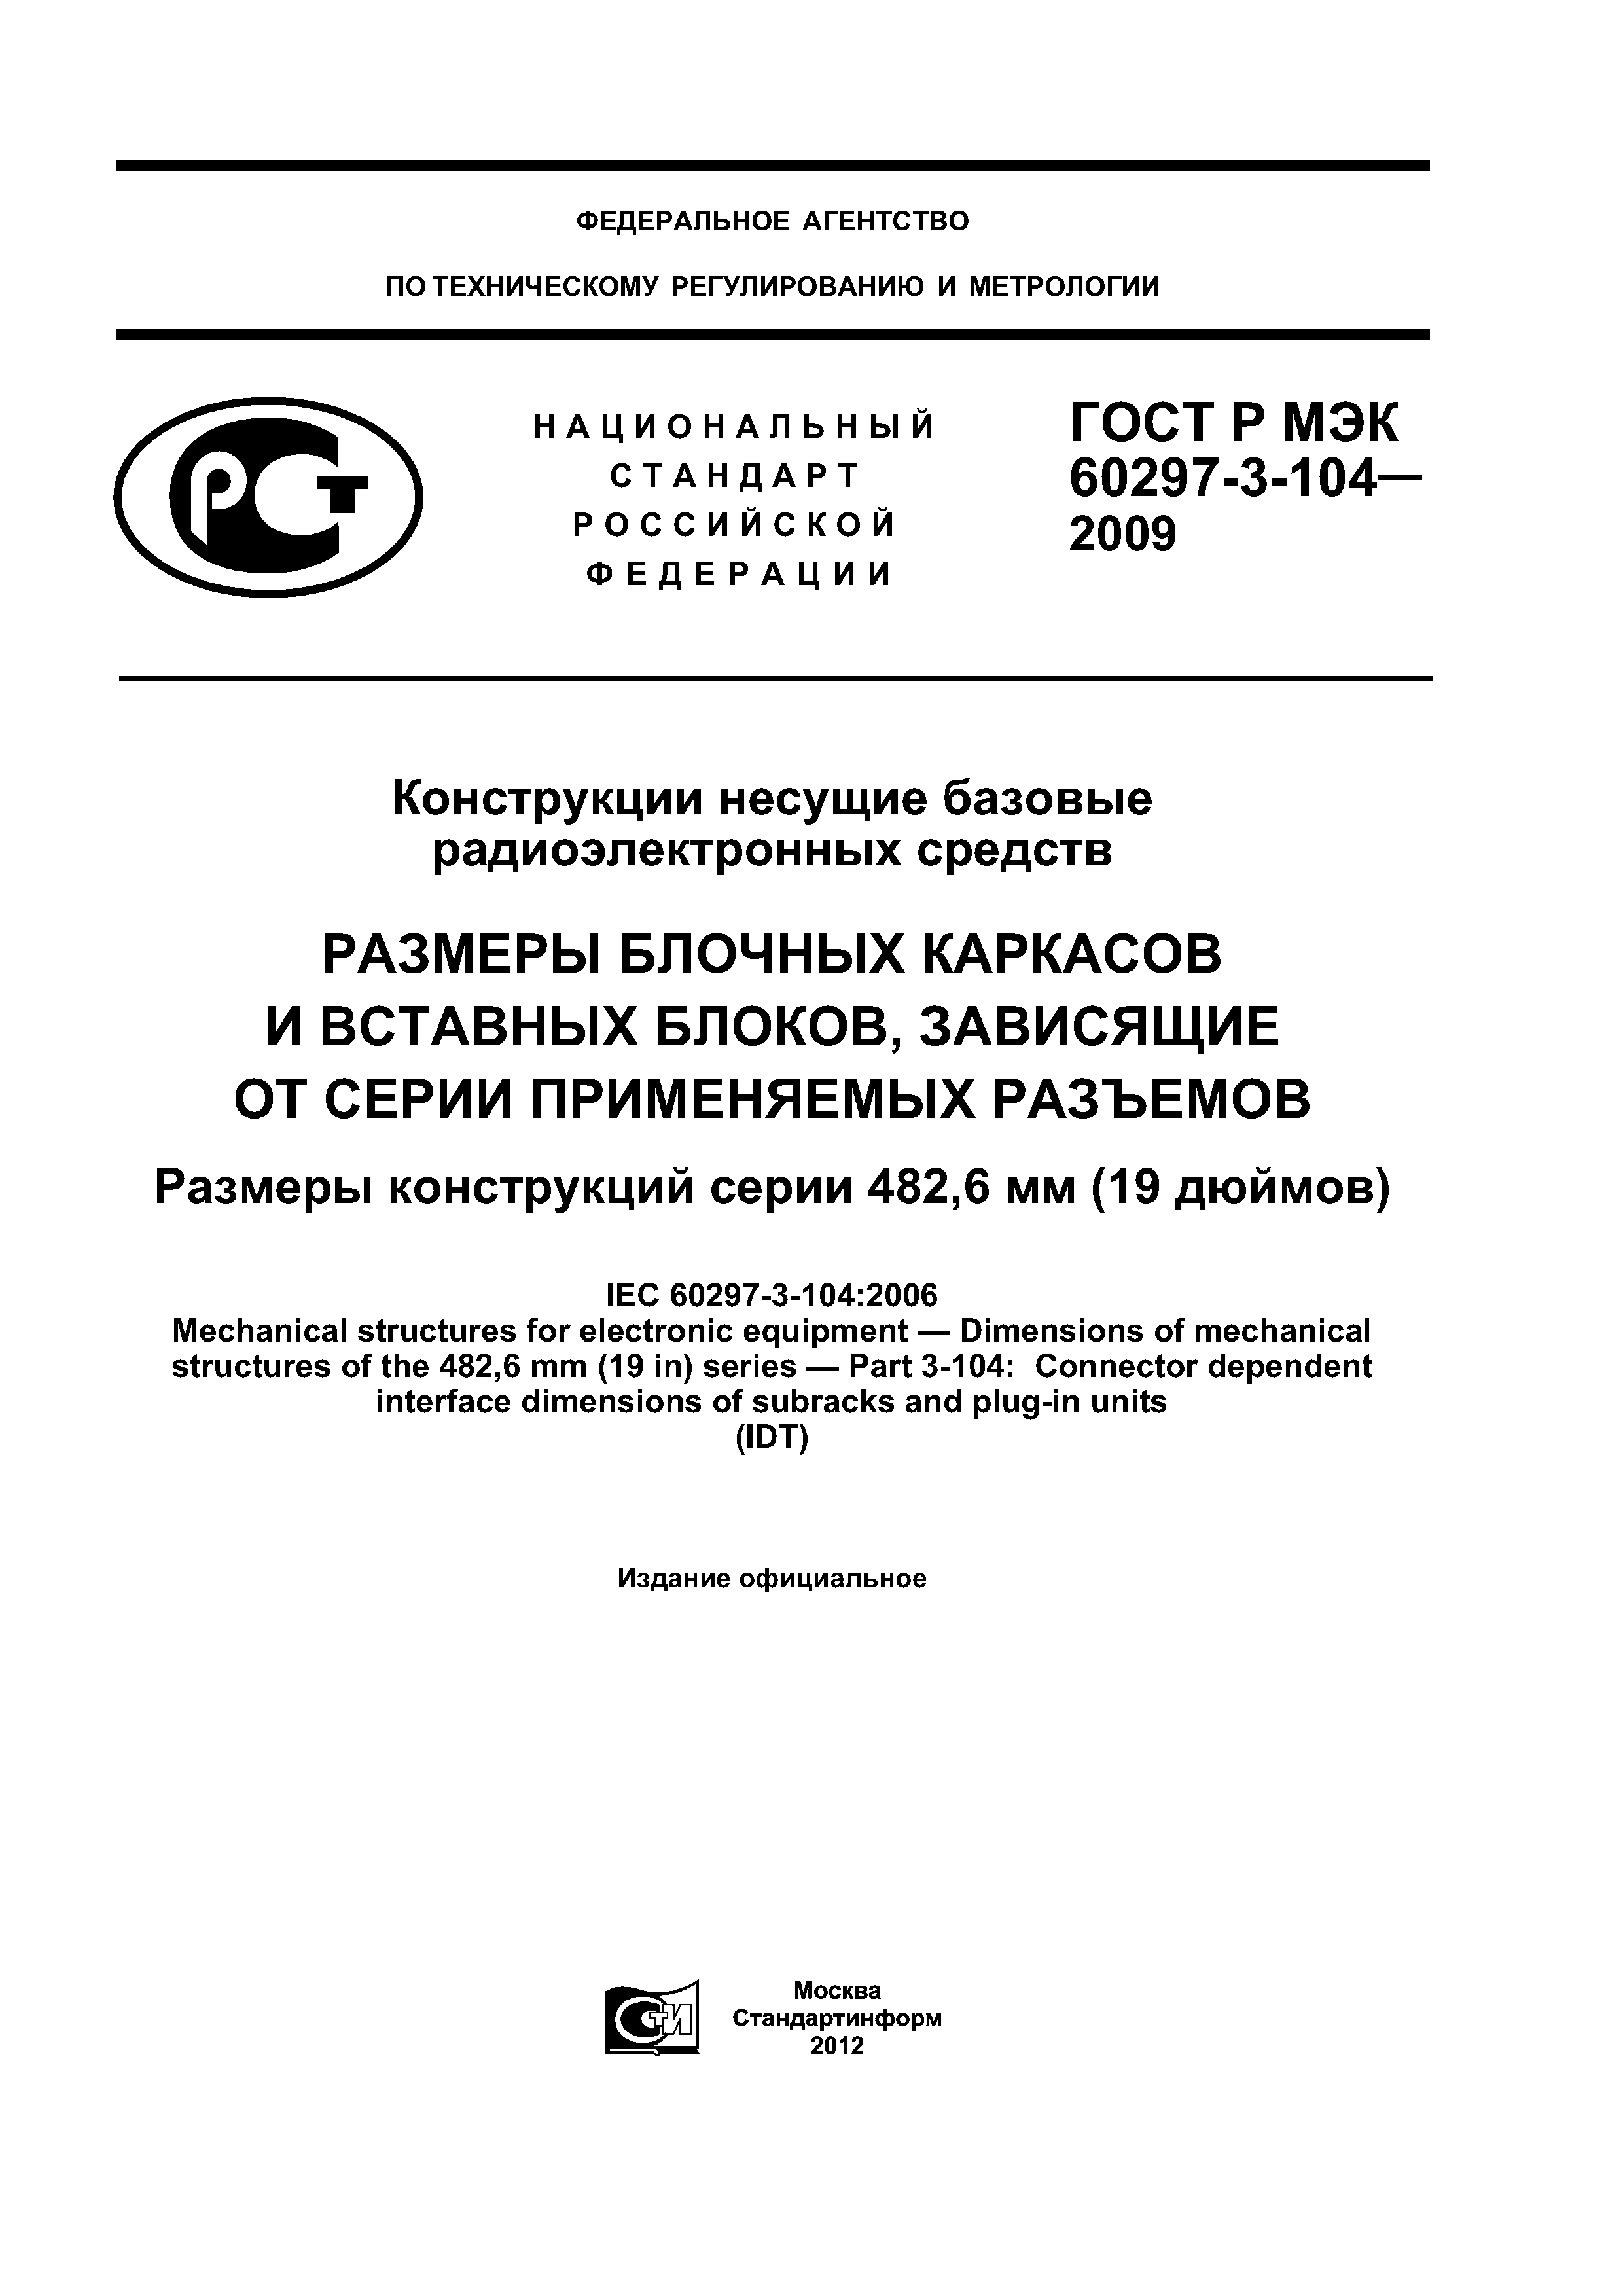 ГОСТ Р МЭК 60297-3-104-2009